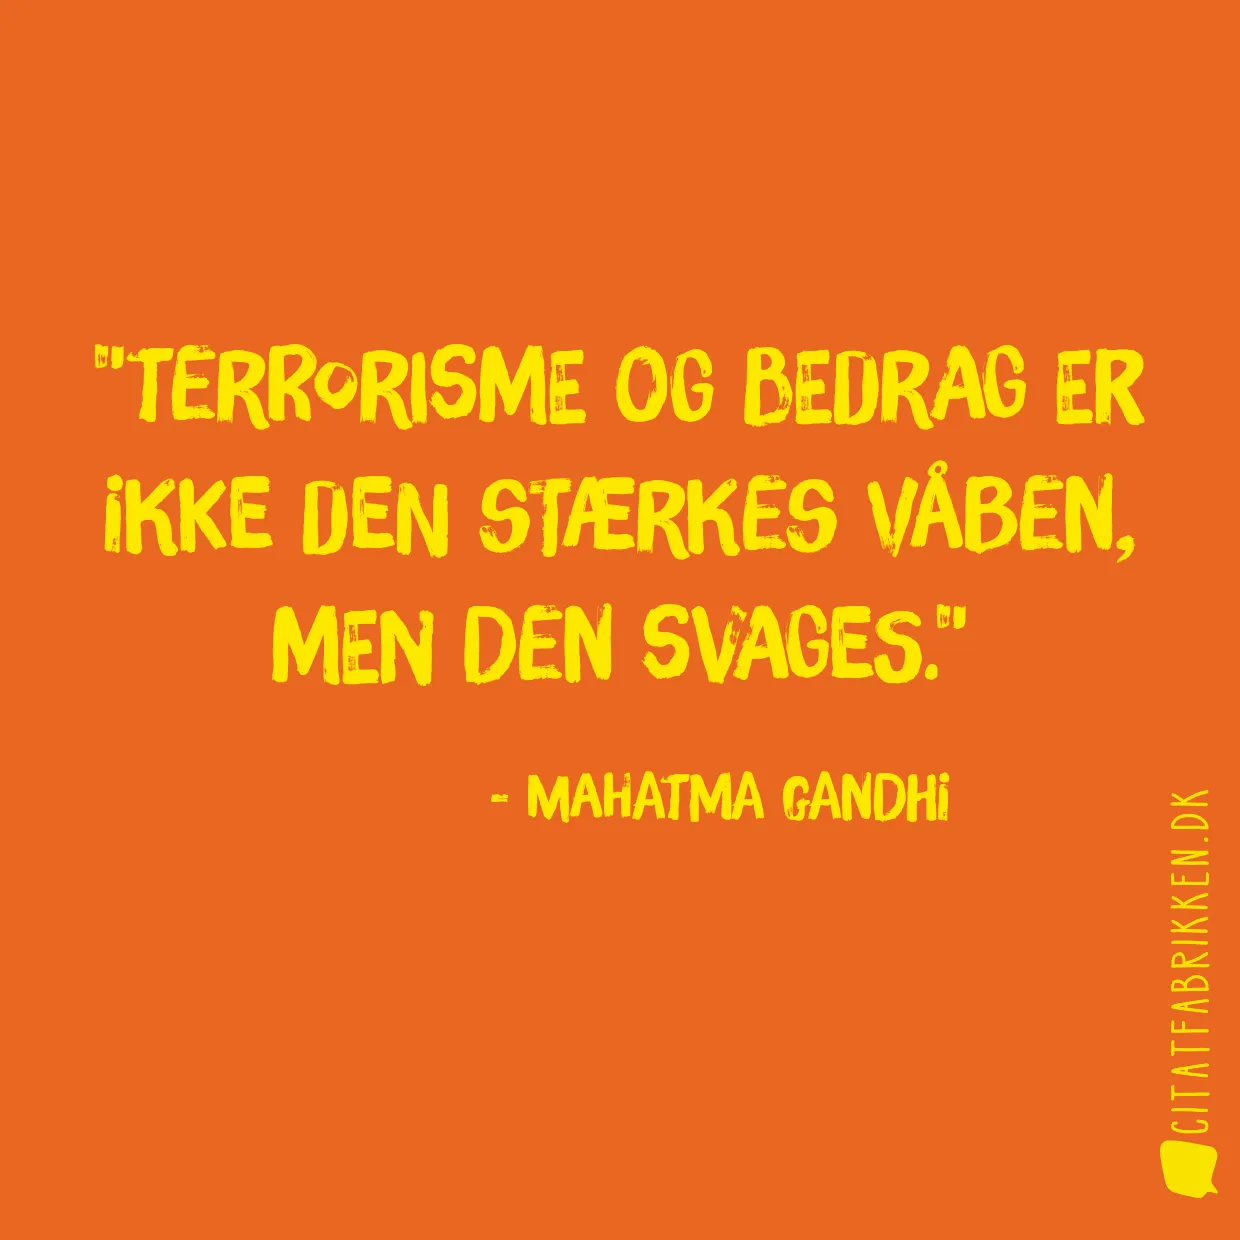 Terrorisme og bedrag er ikke den stærkes våben, men den svages.